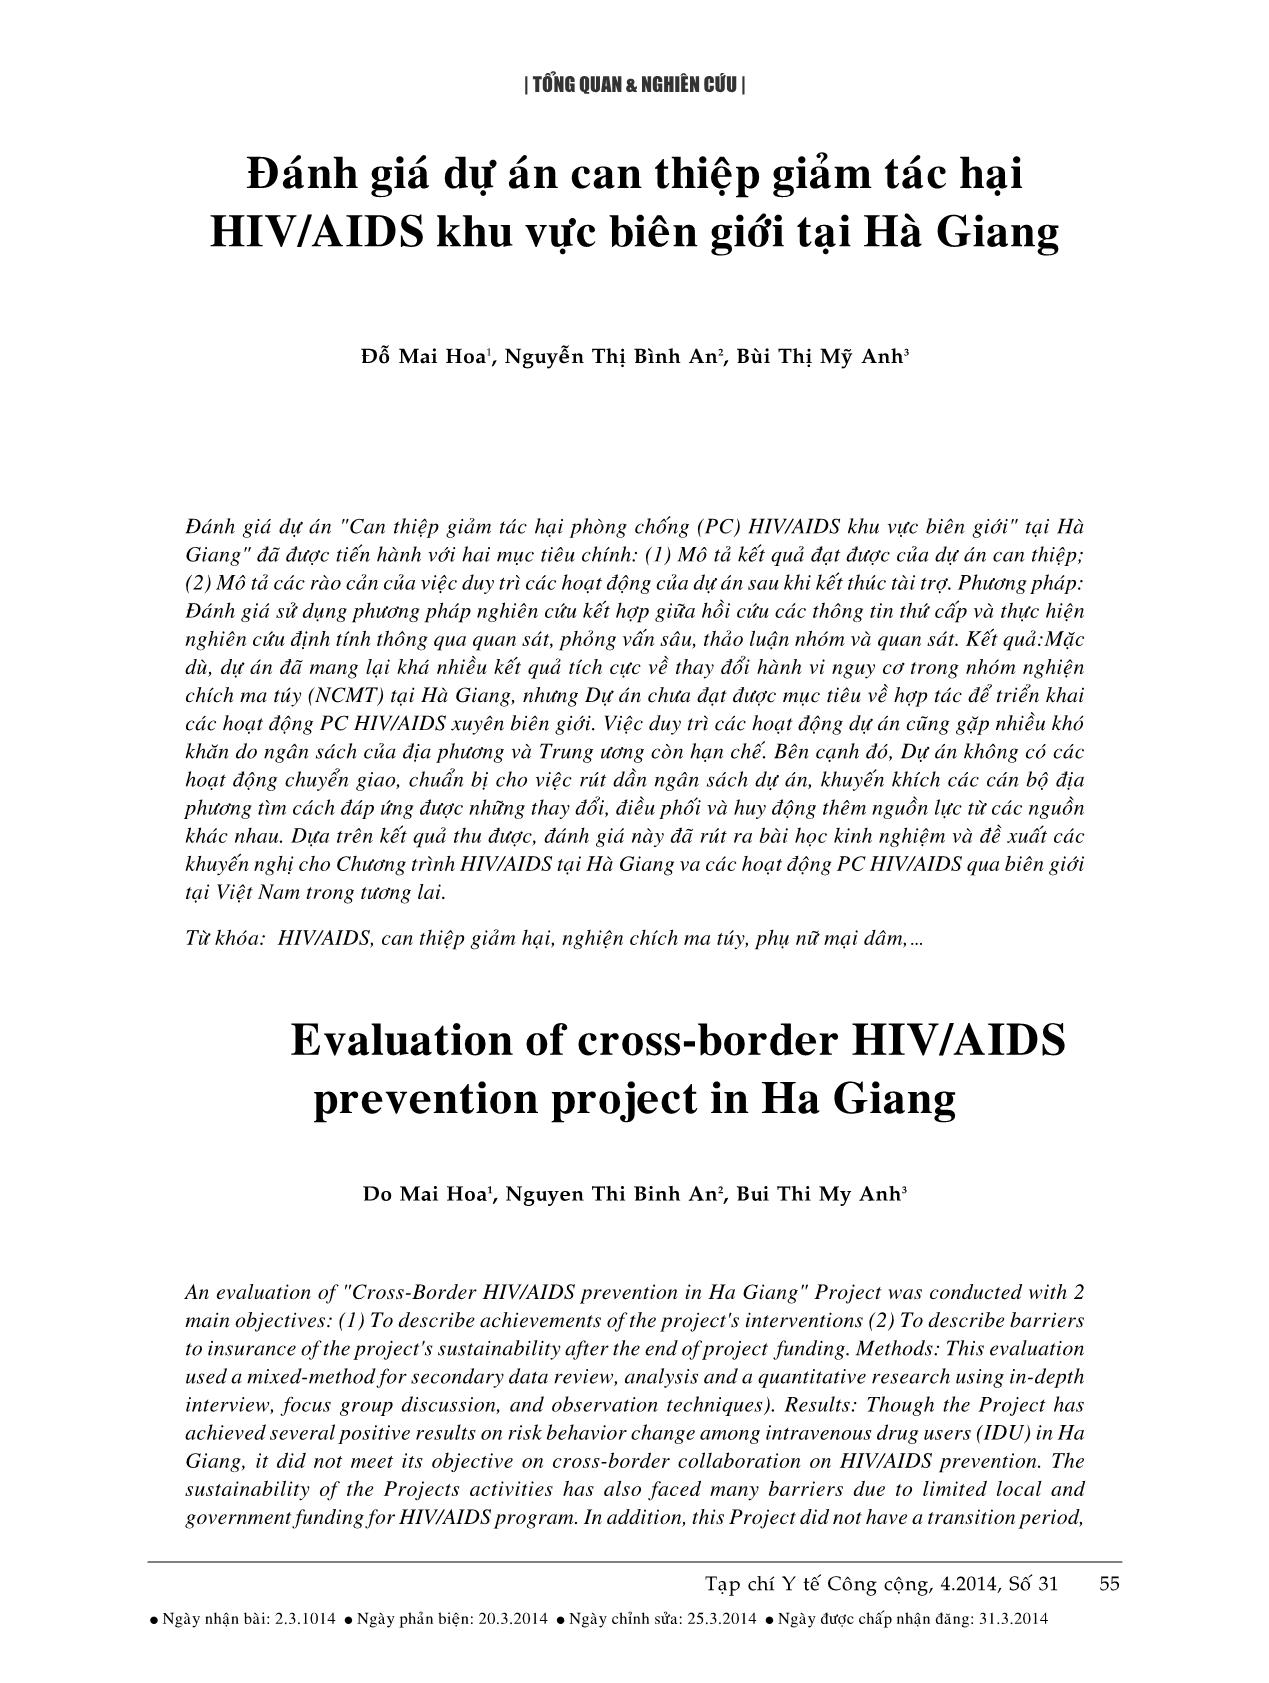 Đánh giá dự án can thiệp giảm tác hại HIV/AIDS khu vực biên giới tại Hà Giang trang 1